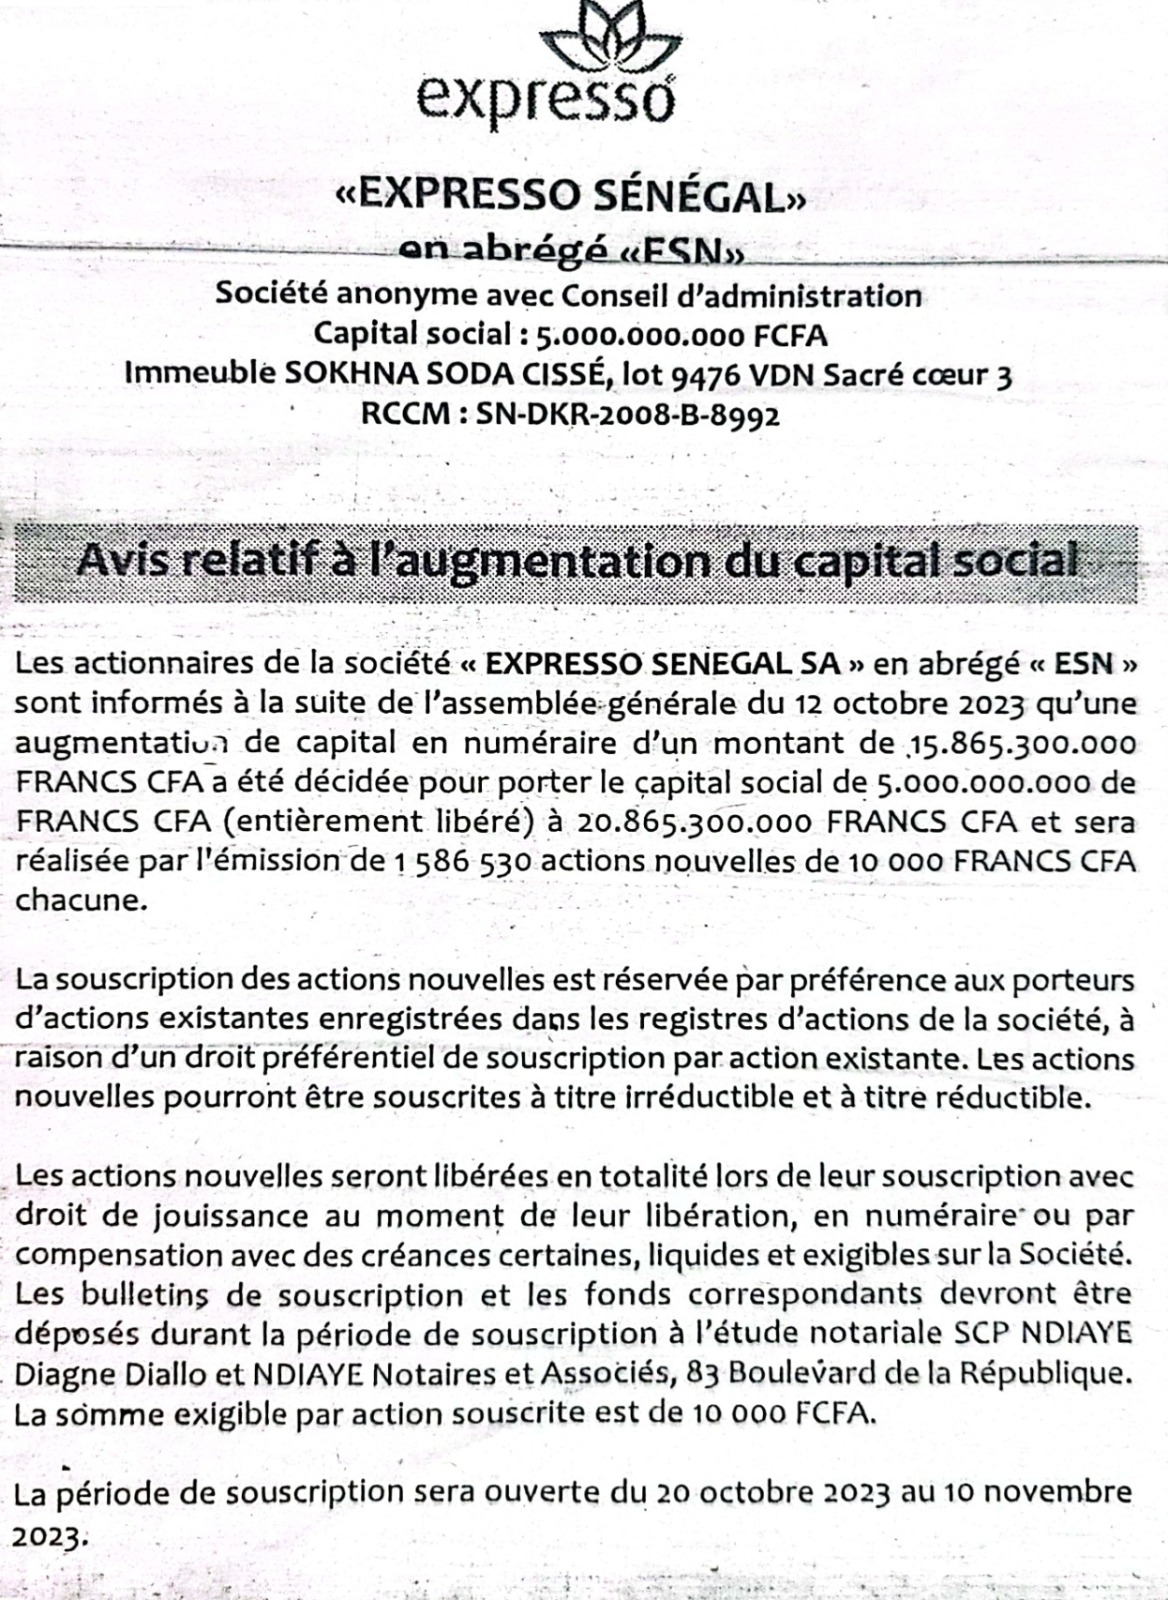 Télécommunications : Expresso Sénégal lance un avis relatif à l'augmentation du capital social, qui sera portée à 5 milliards FCfa